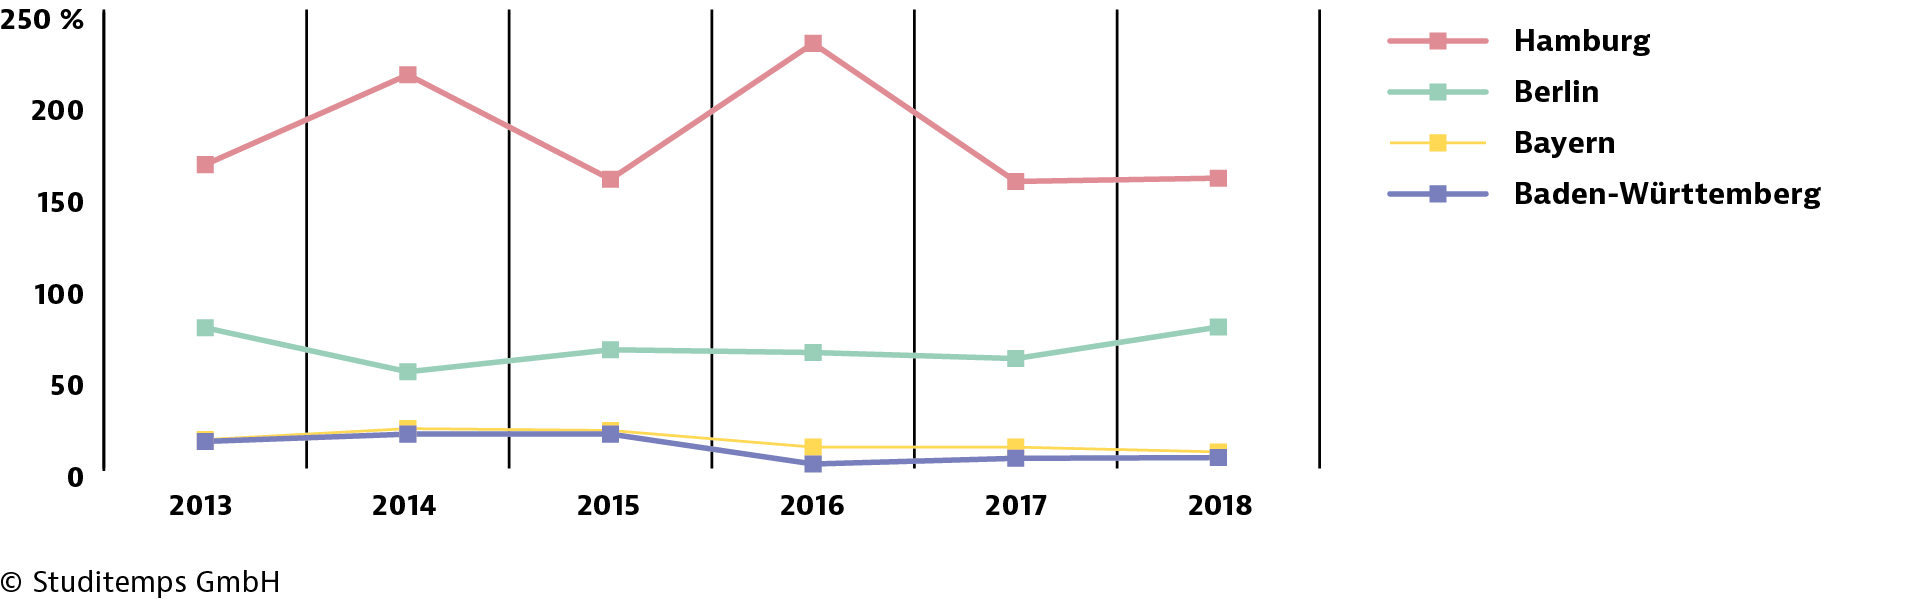 GETPRESS-Diagramm-Trend-der-studentischen-Migration-positiv